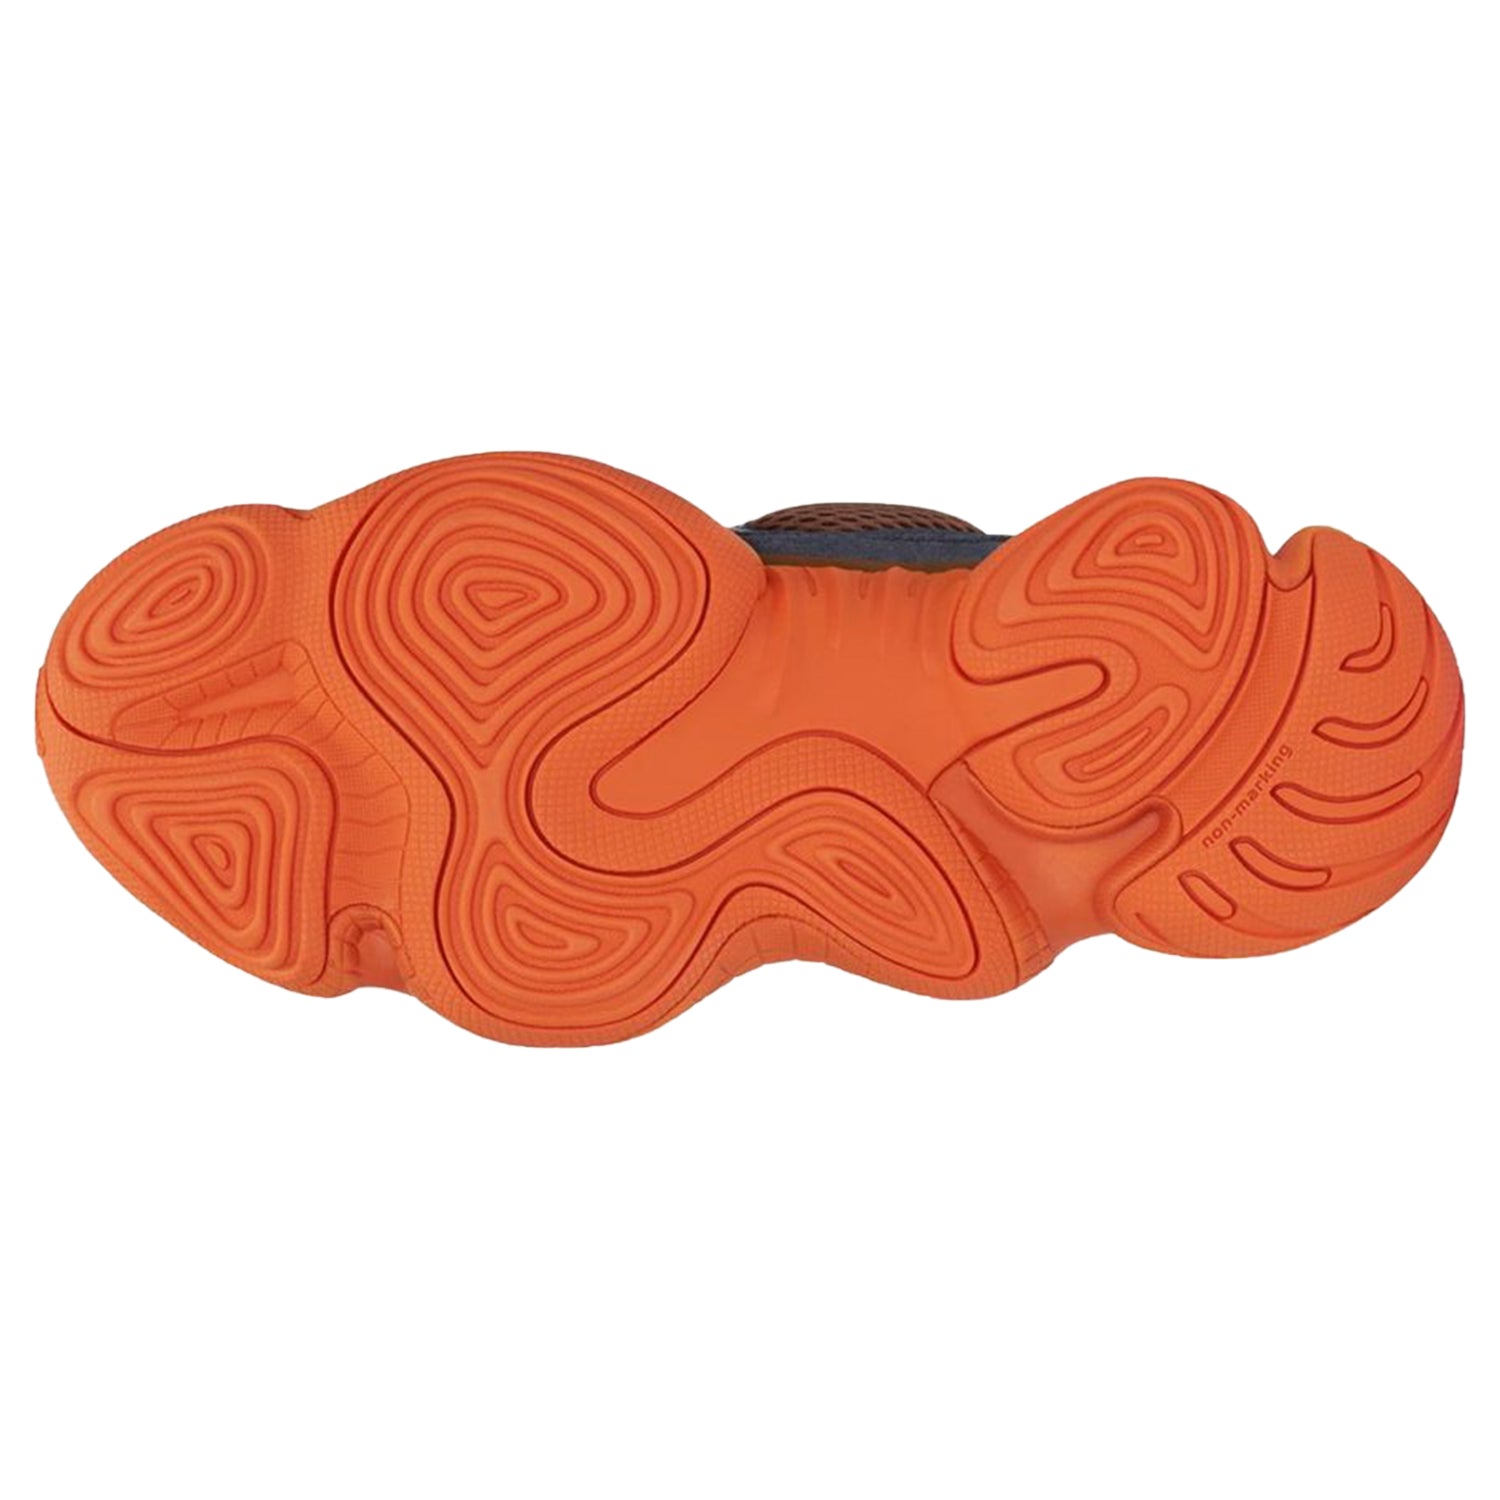 adidas Yeezy 500 High Tactile Orange